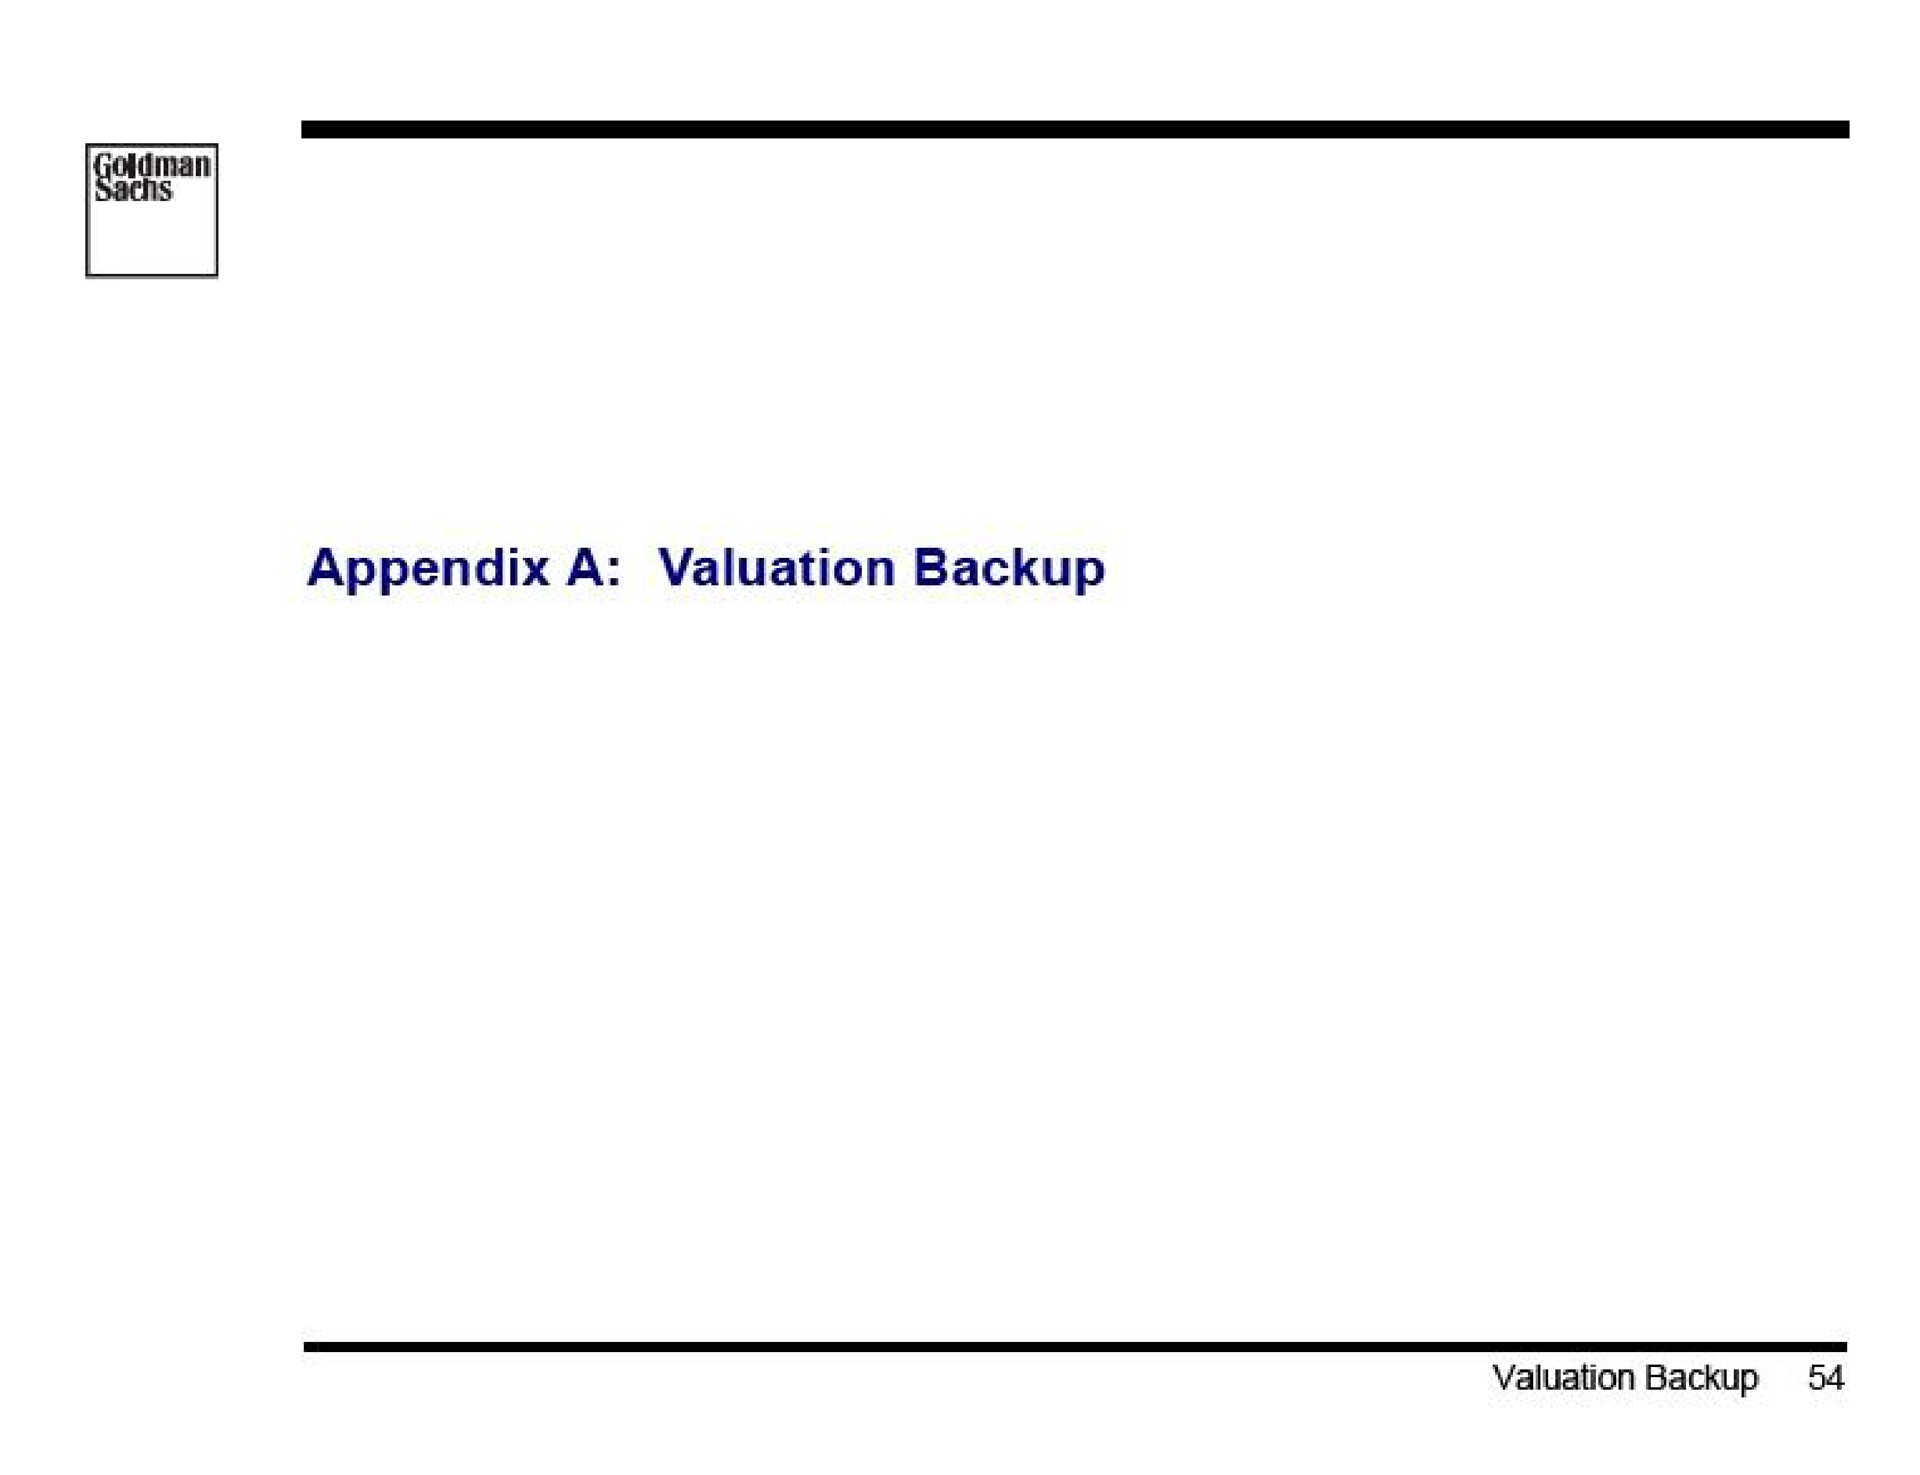 appendix a valuation backup | Goldman Sachs